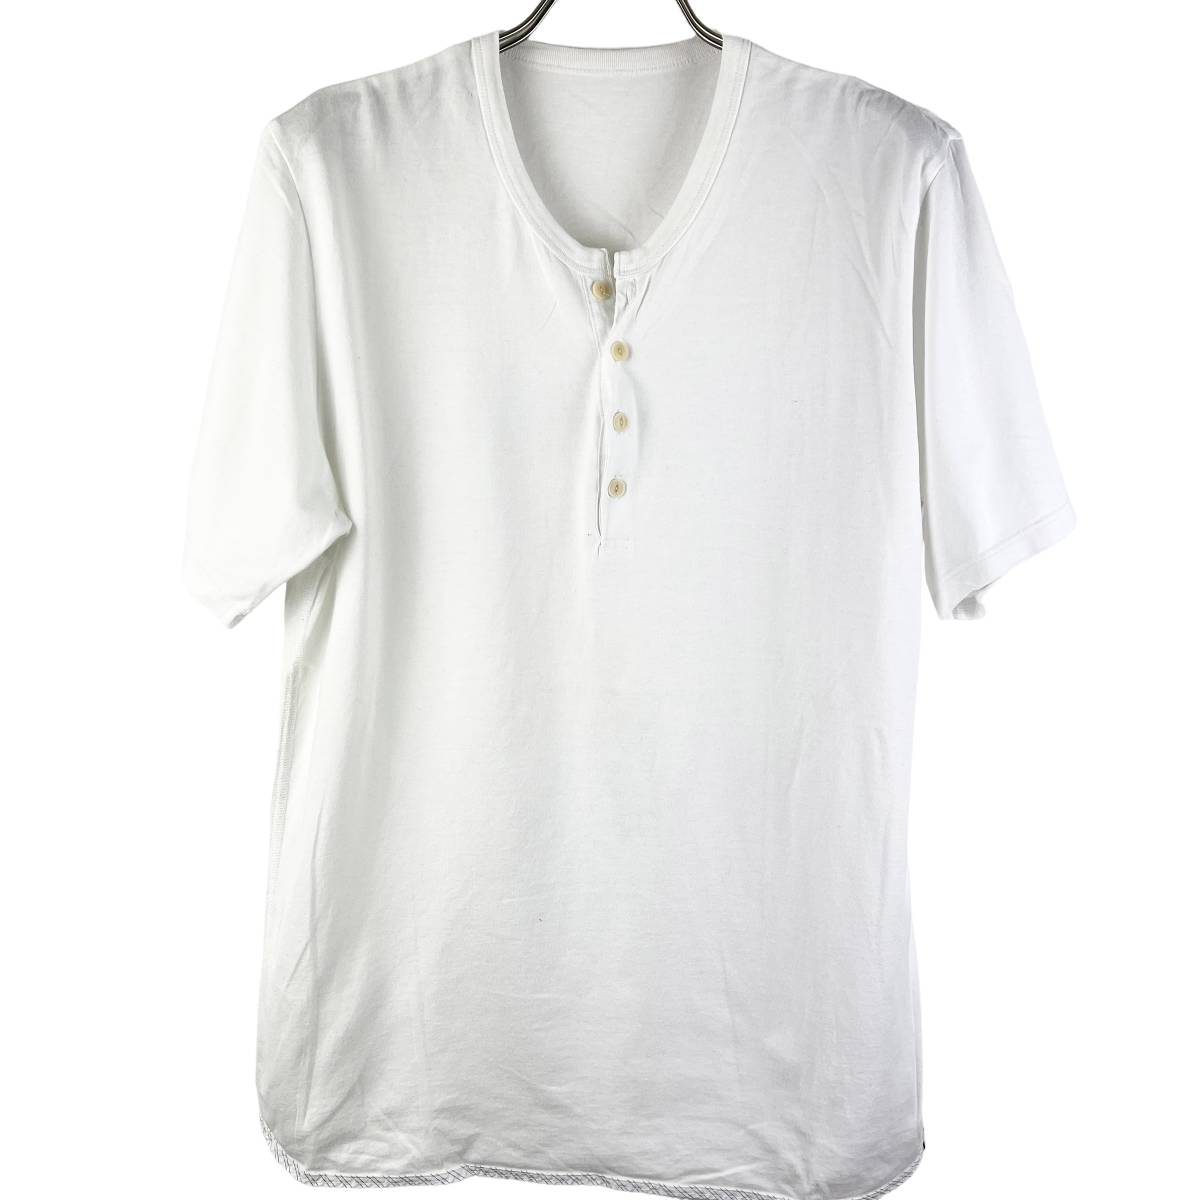 VISVIM(ビズビム) Collarless Bottom Cotton T Shirt (white) 3ひ